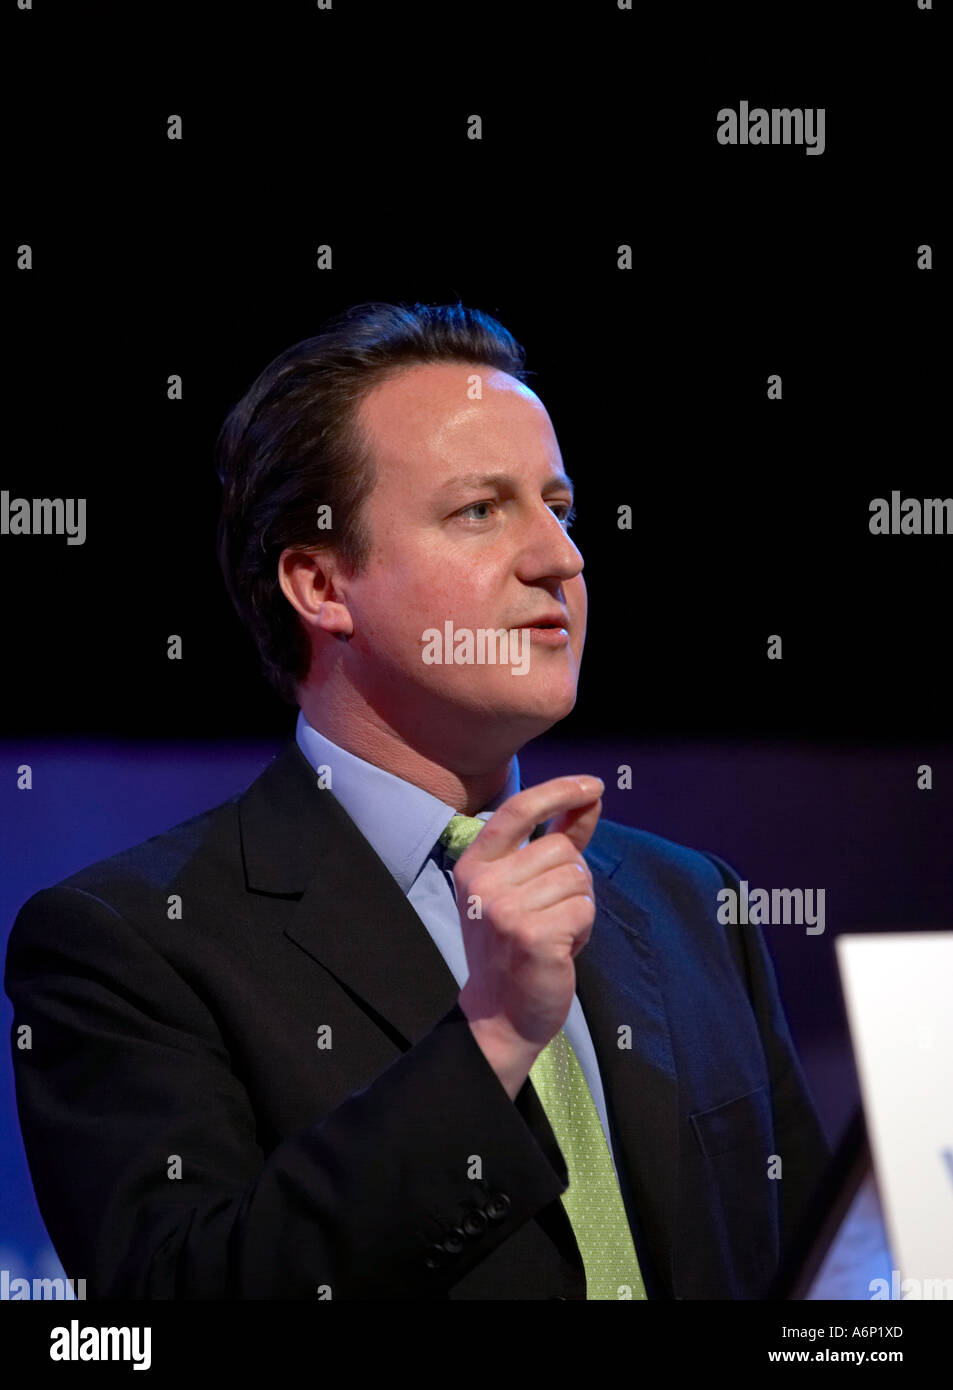 El Primer Ministro David Cameron, dirigiéndose a una conferencia del Partido Conservador en Gales Llandudno, Gales del Norte Foto de stock